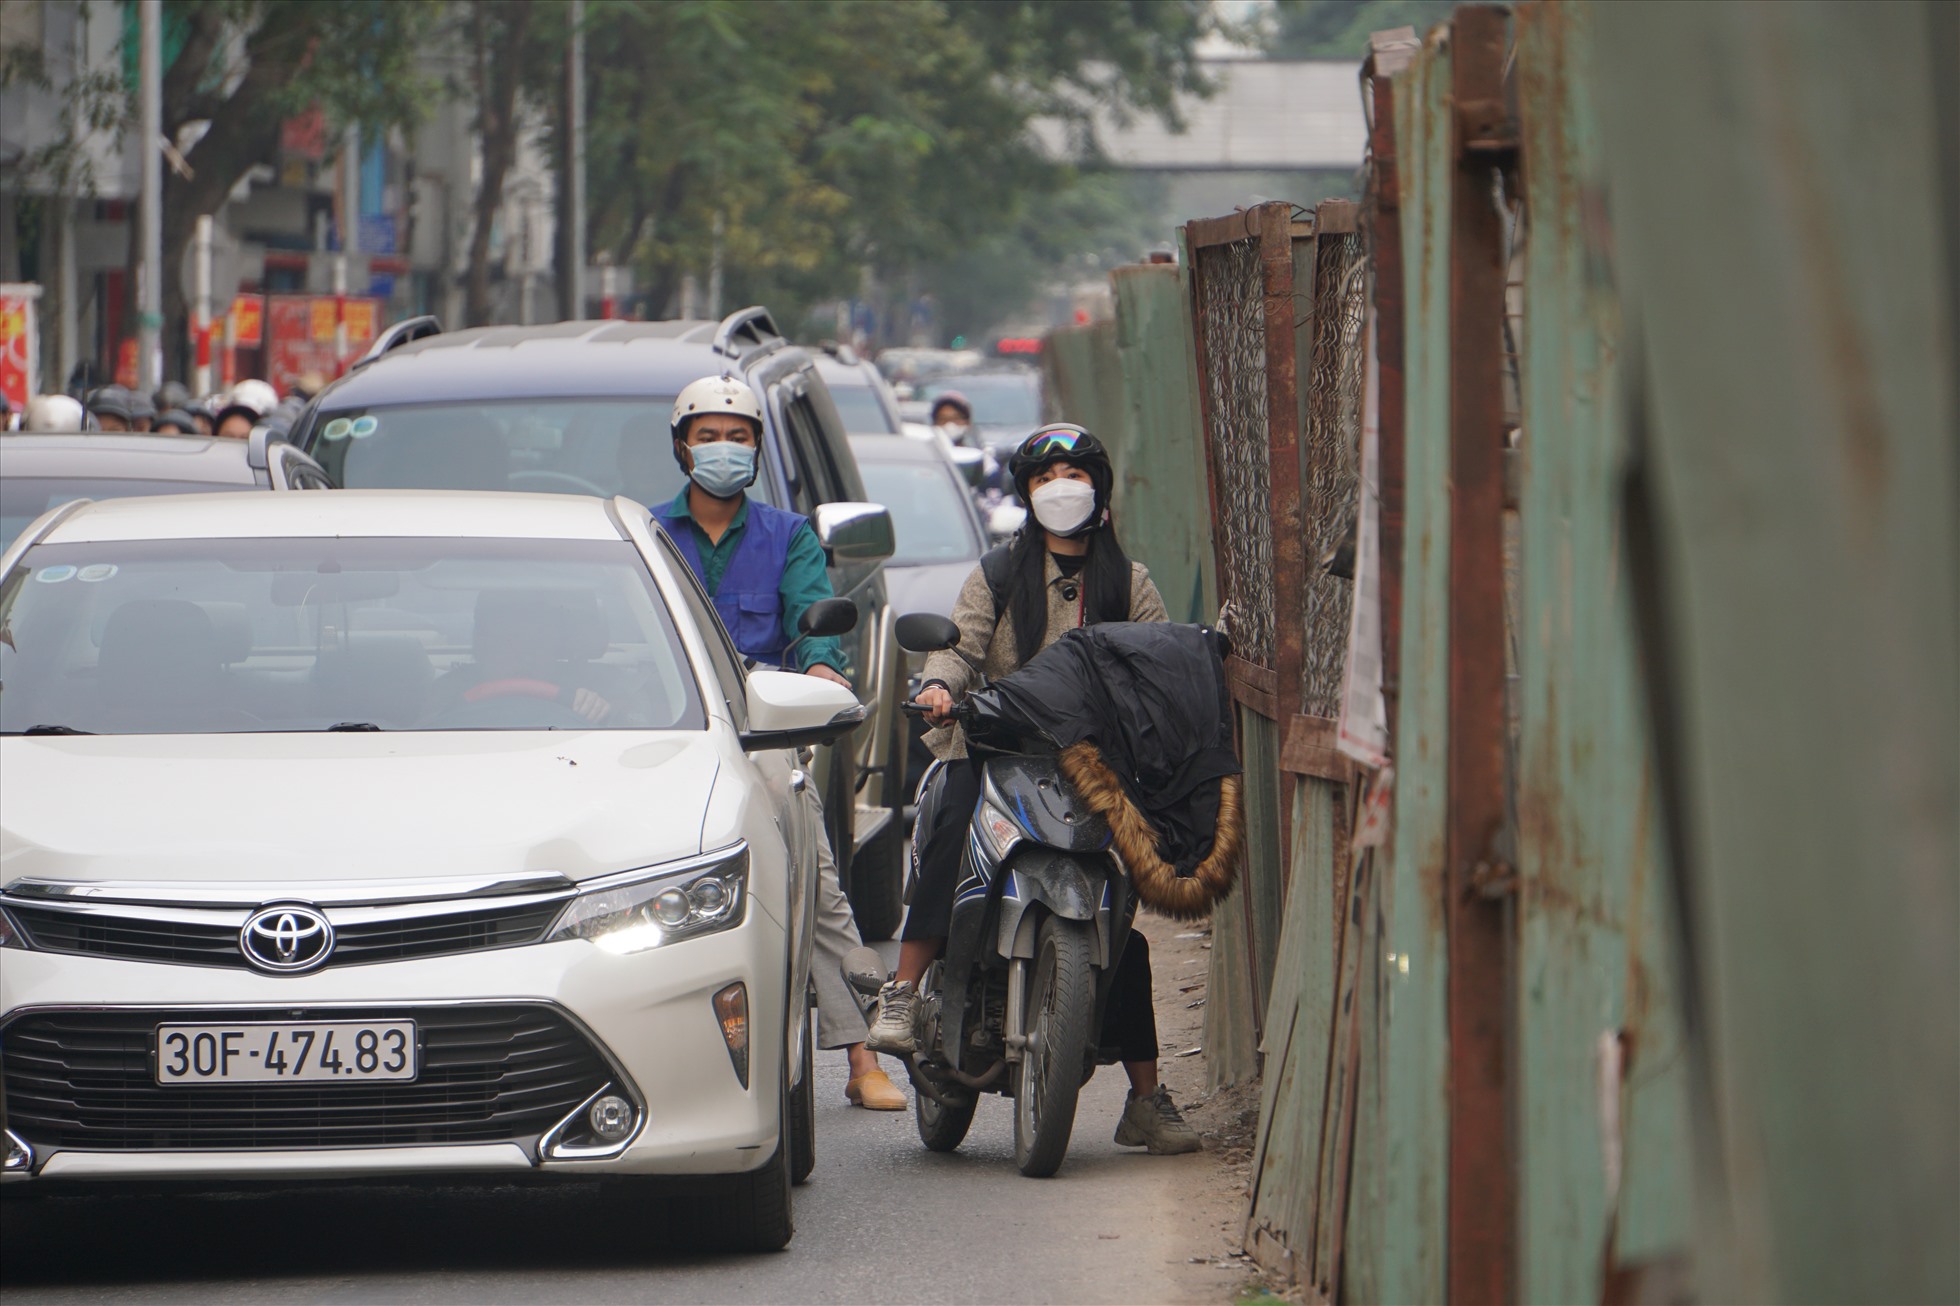 Tình trạng tắc đường tại đây xảy ra như “cơm bữa“, nhiều người dân vất vả khi vừa phải tham gia giao thông trong điều kiện đông đúc và vừa phải né các rào chắn lồi ra đường.